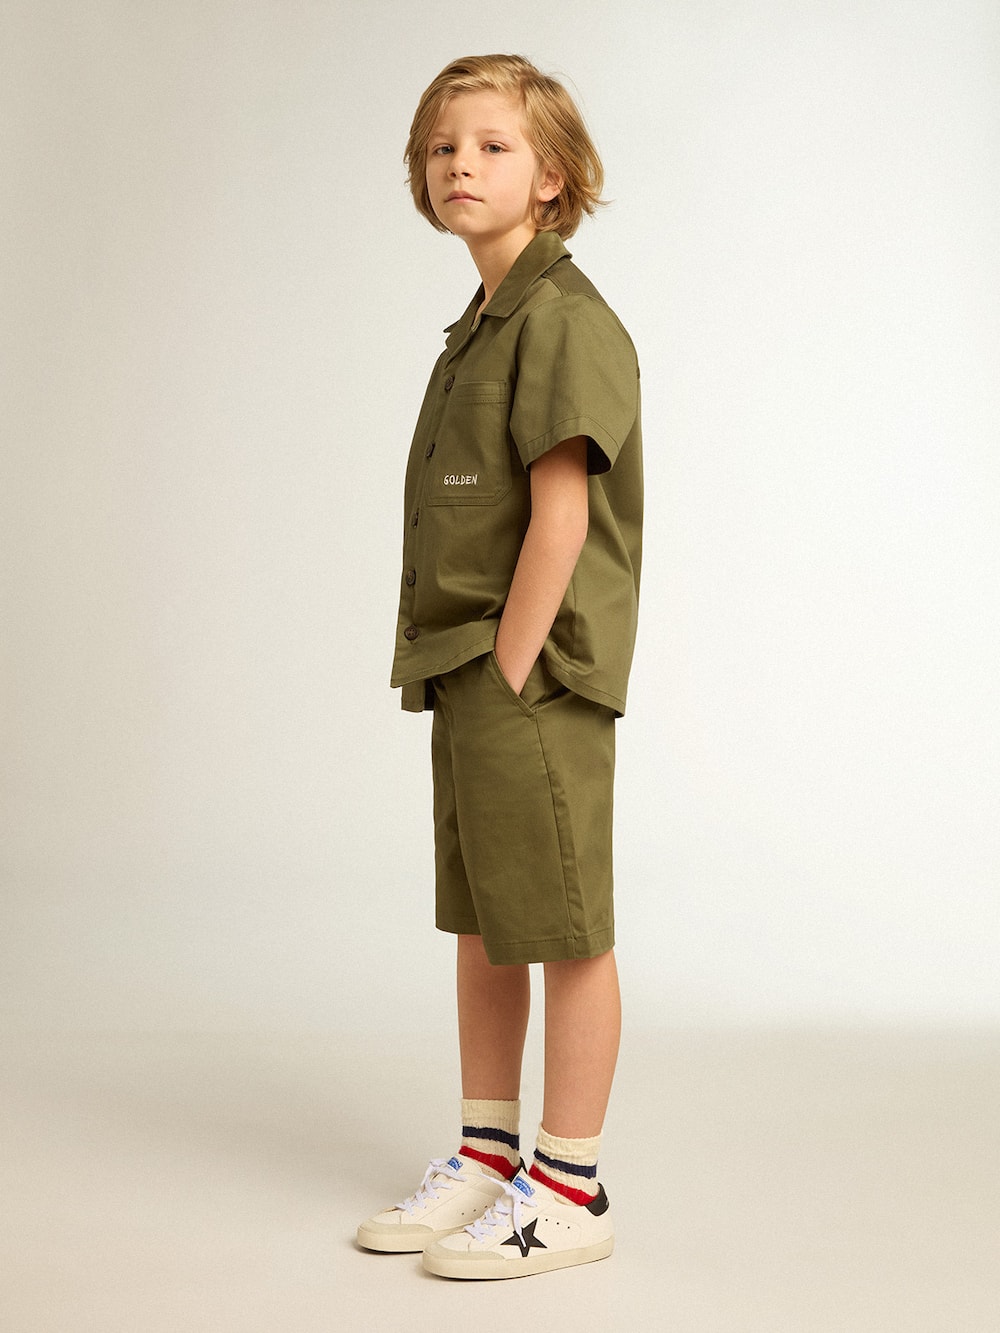 Golden Goose - Camicia color verde militare da bambino in 